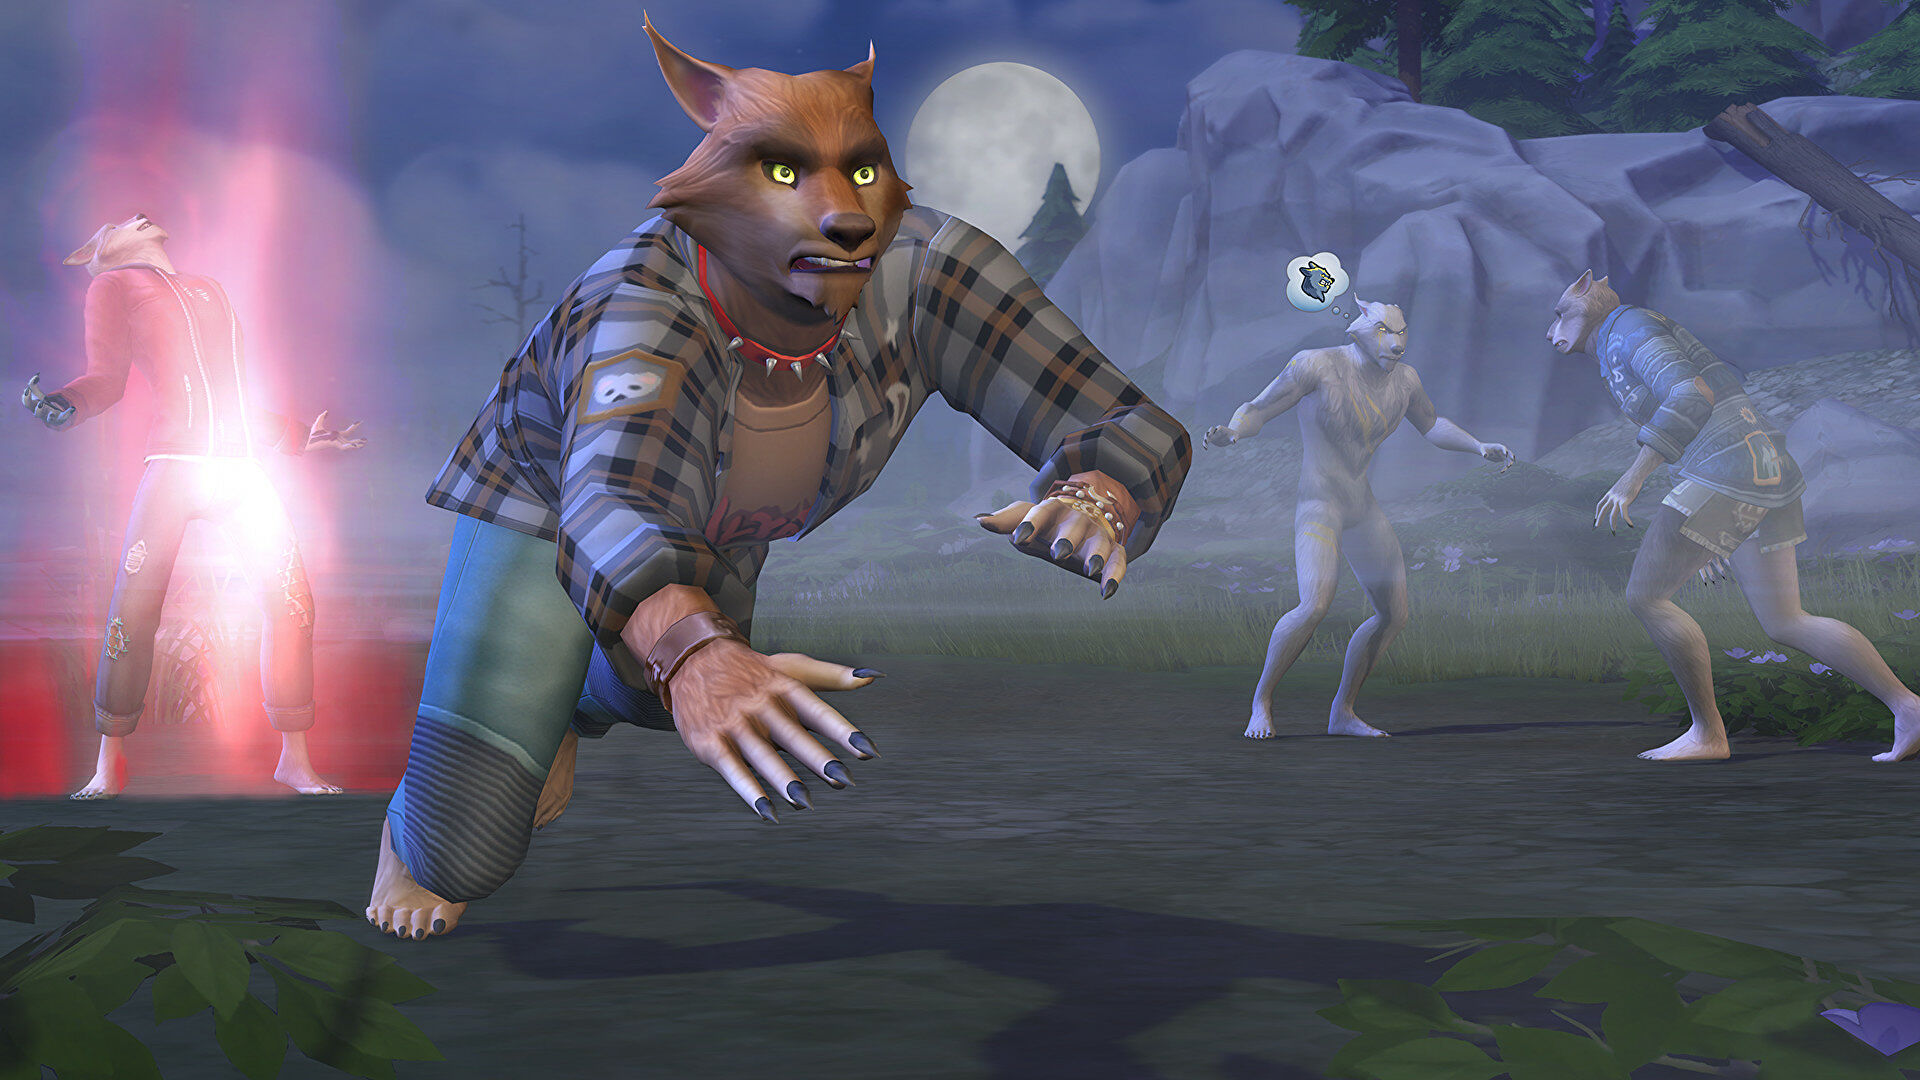 Ang Sims 4 Werewolf